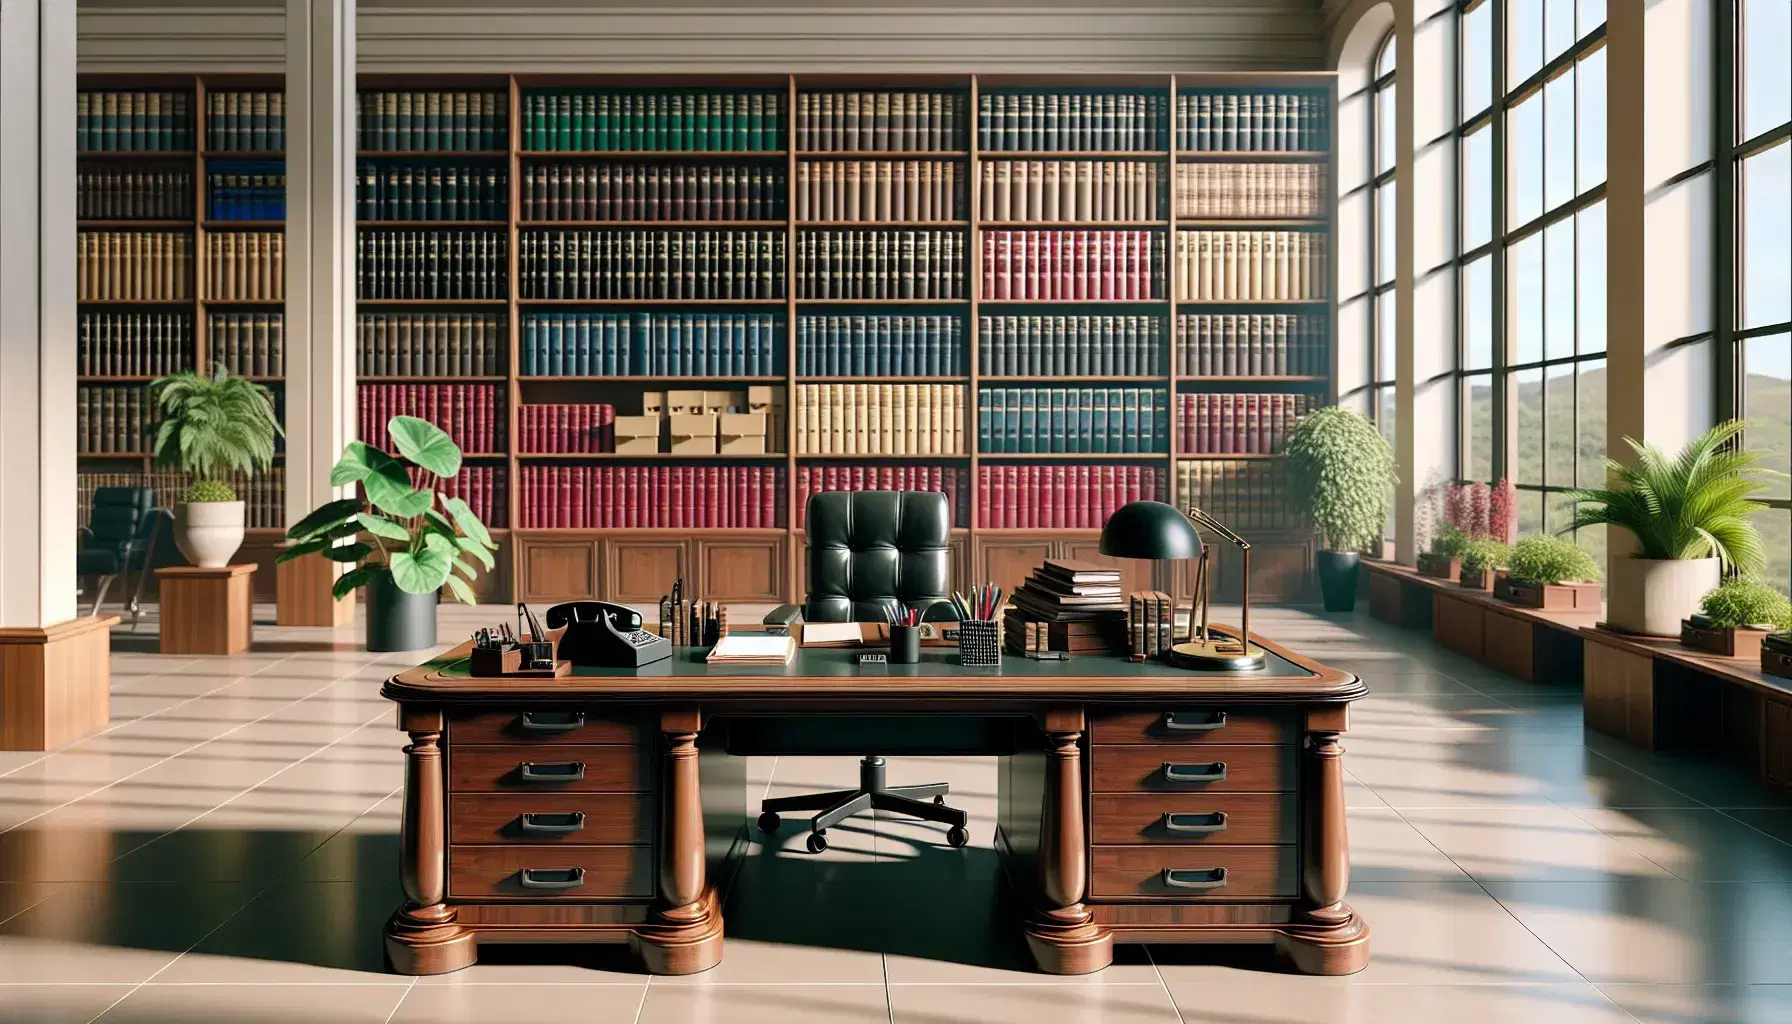 Oficina gubernamental iluminada con escritorio de madera, teléfono, calculadora, carpetas de colores, estantería con libros y cajas, y silla de oficina azul.